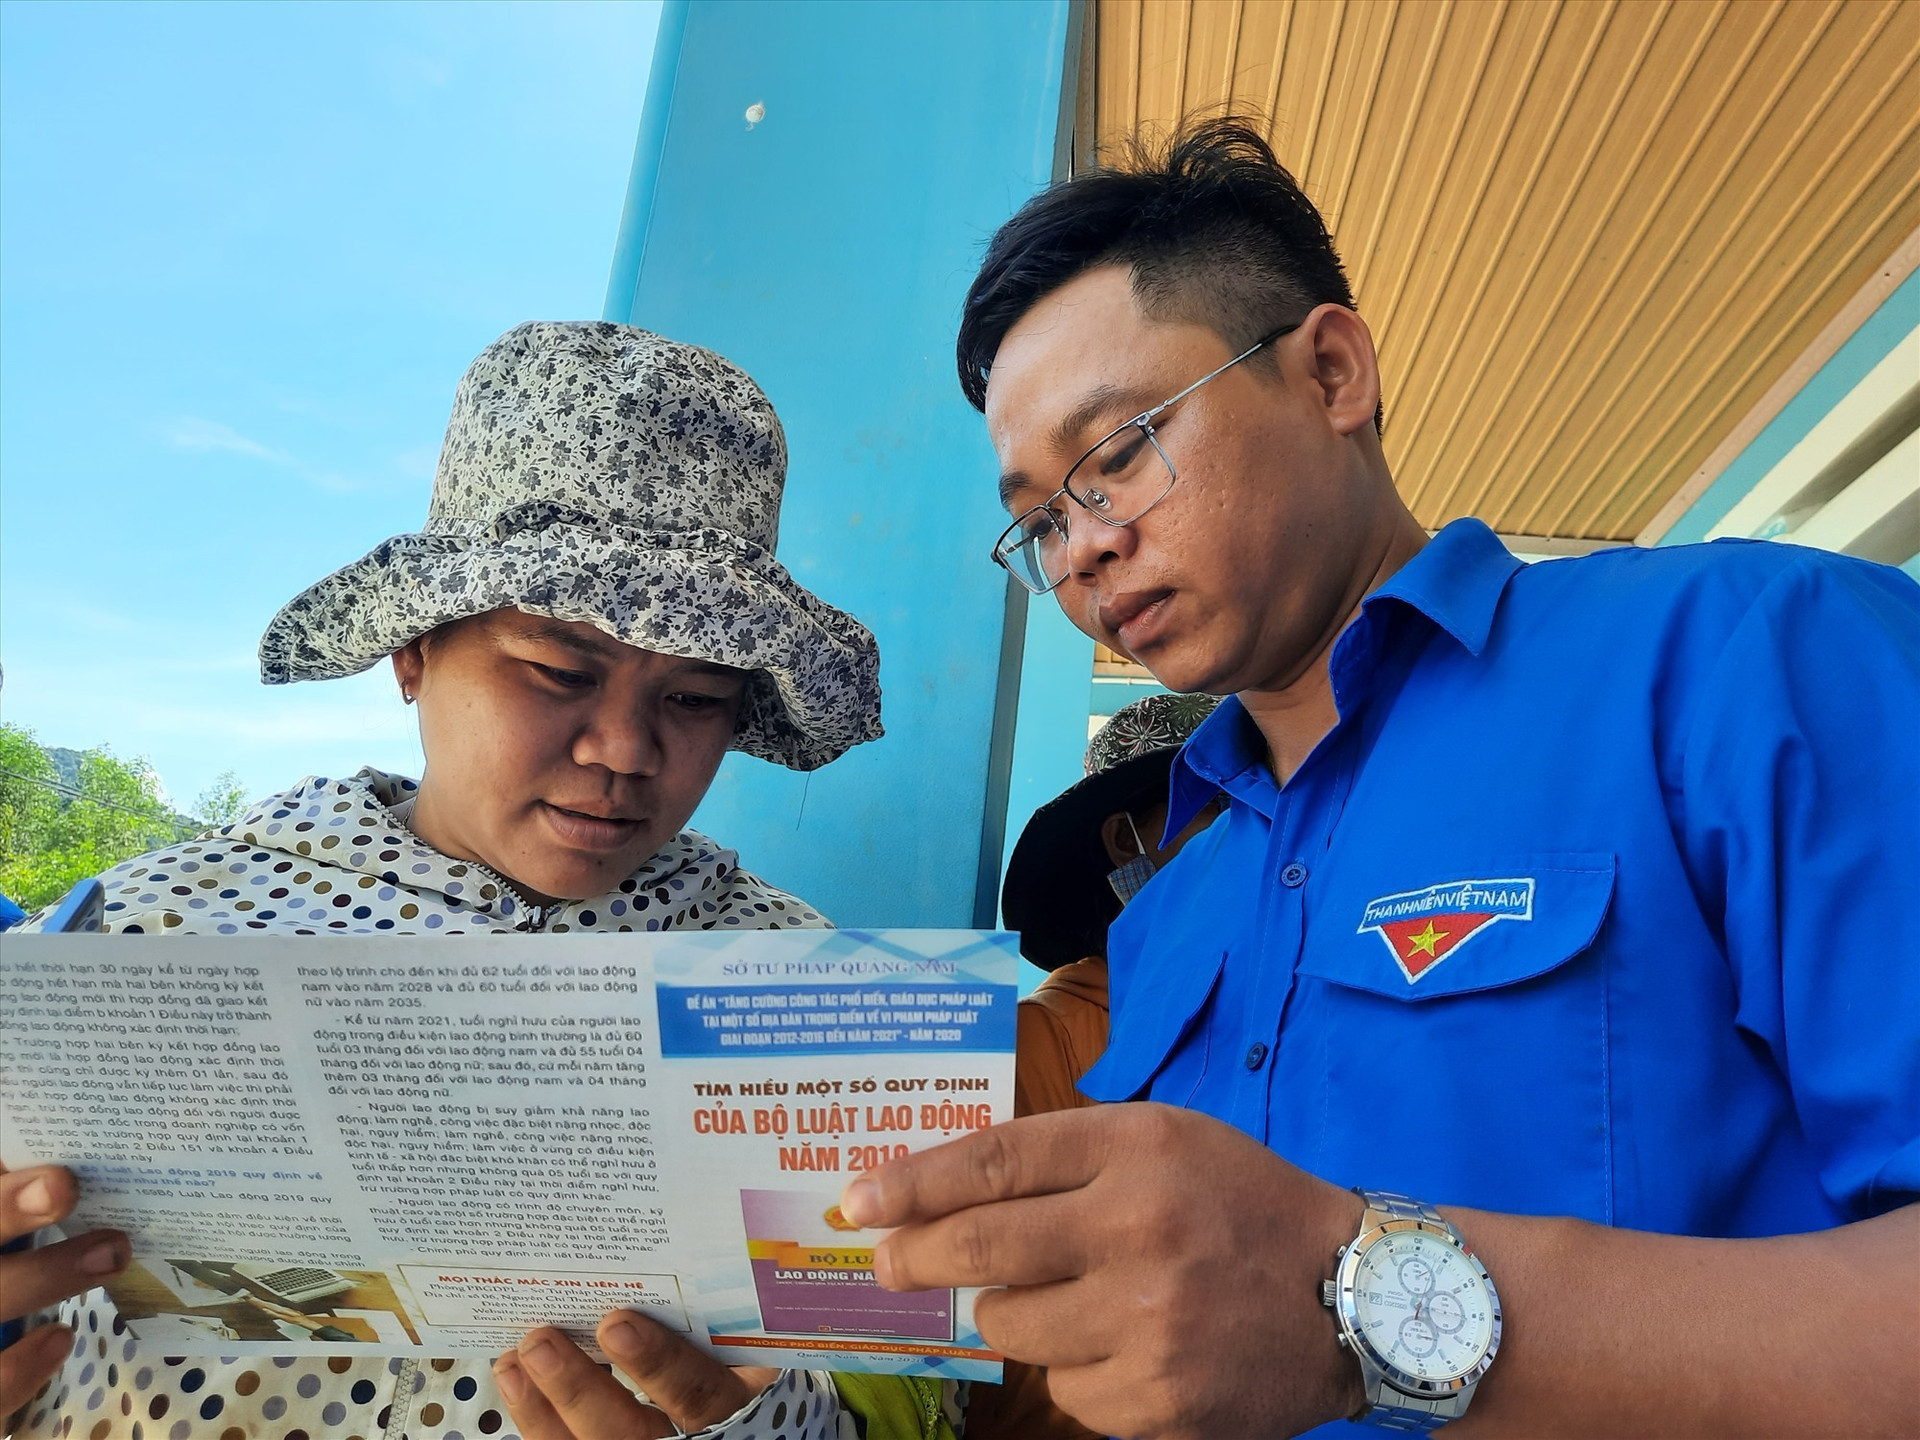 Cấp phát tờ rơi tuyên truyền các quy định mới của pháp luật Việt Nam năm 2020 cho người dân. Ảnh: HỒ QUÂN